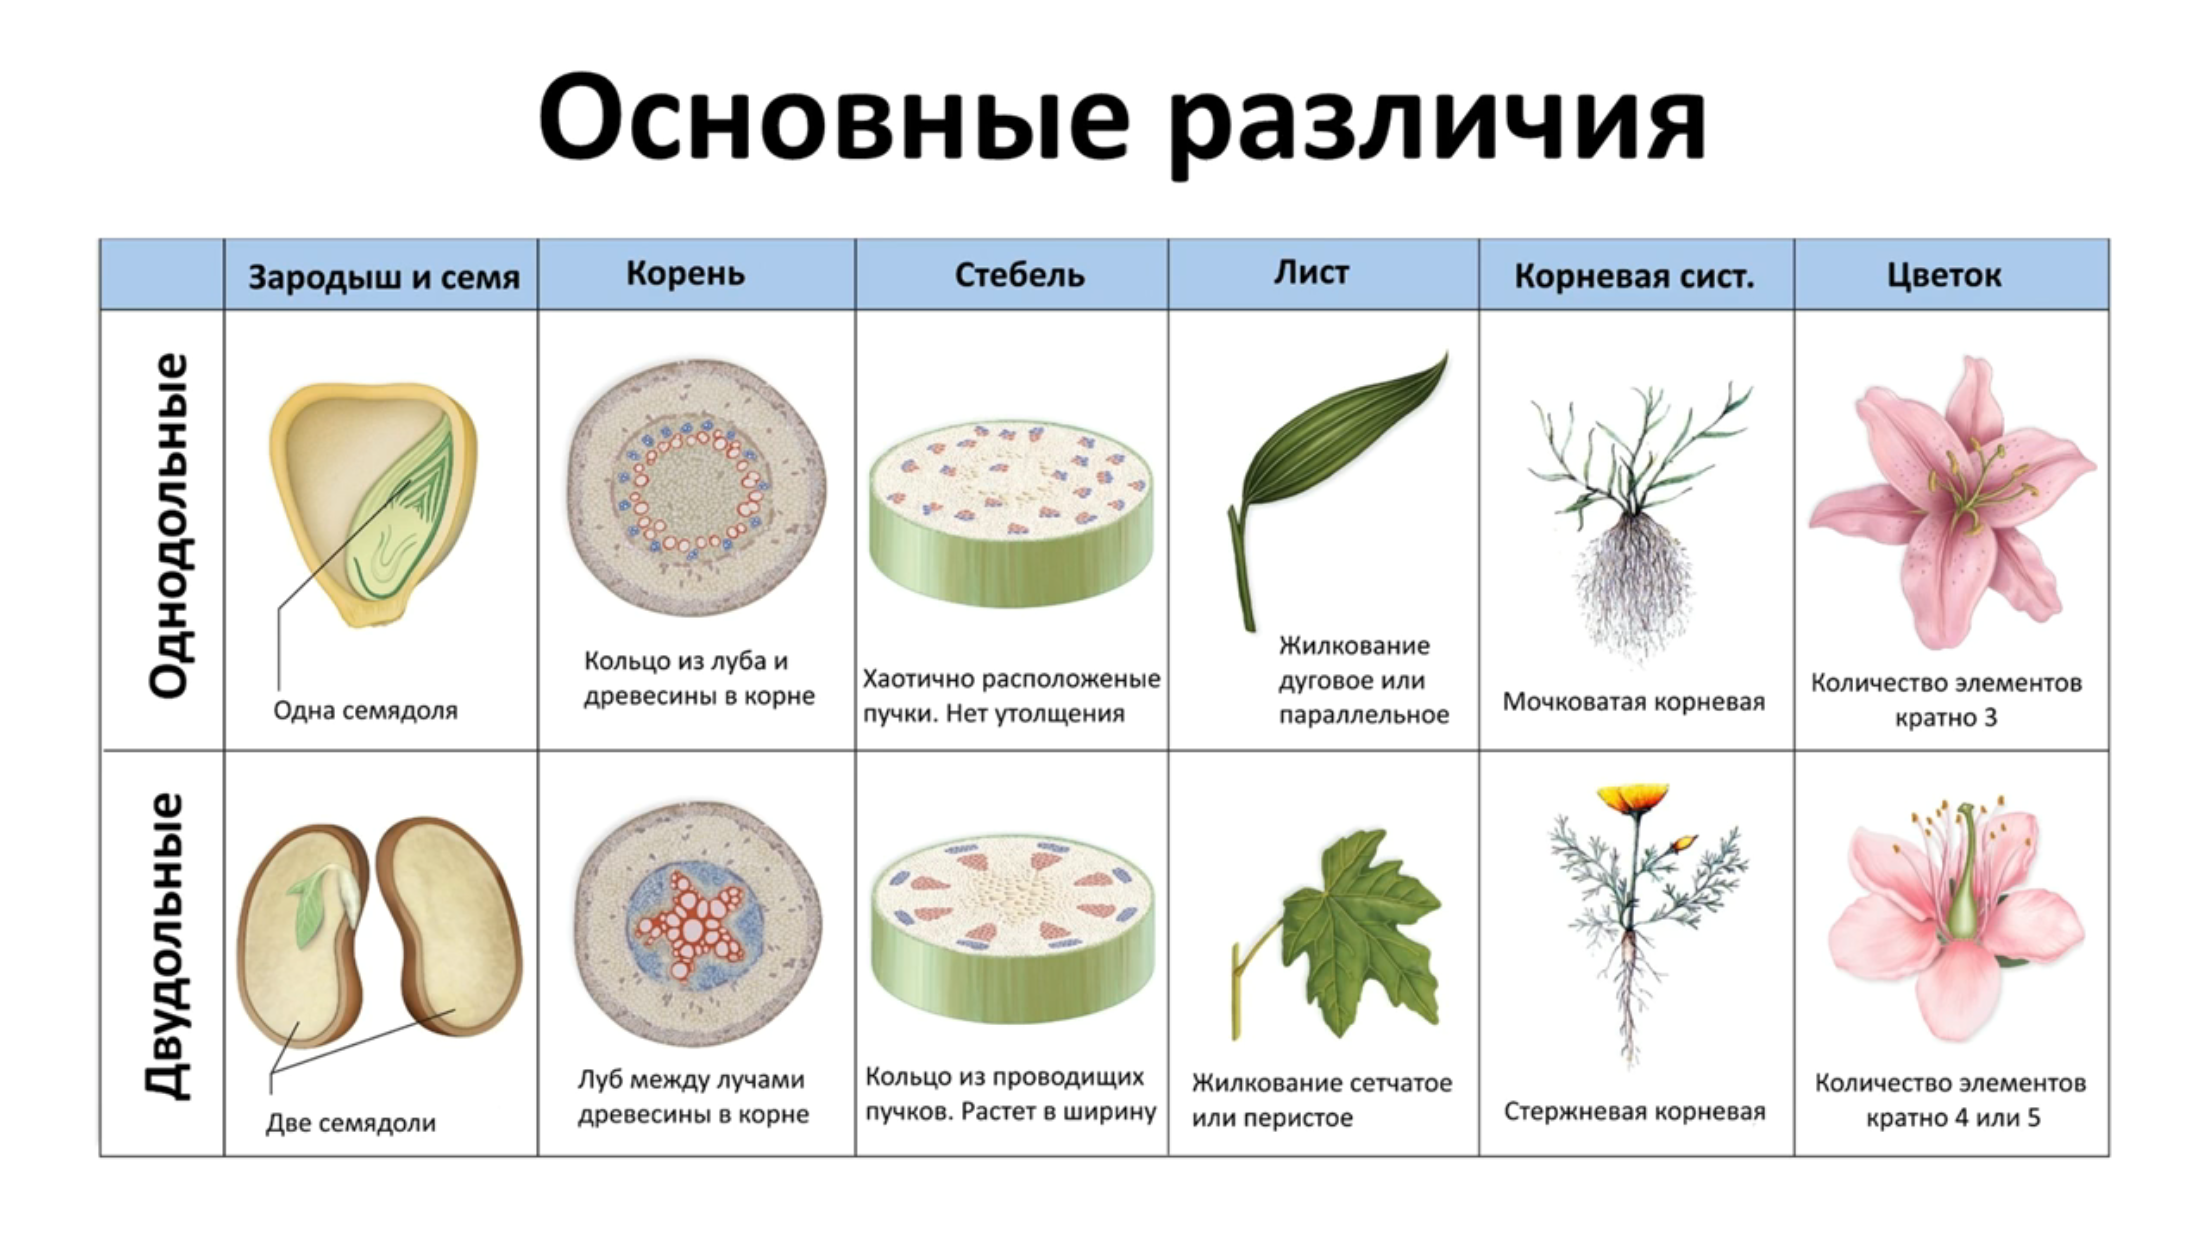 Какая область ботанической науки изучает рост растений